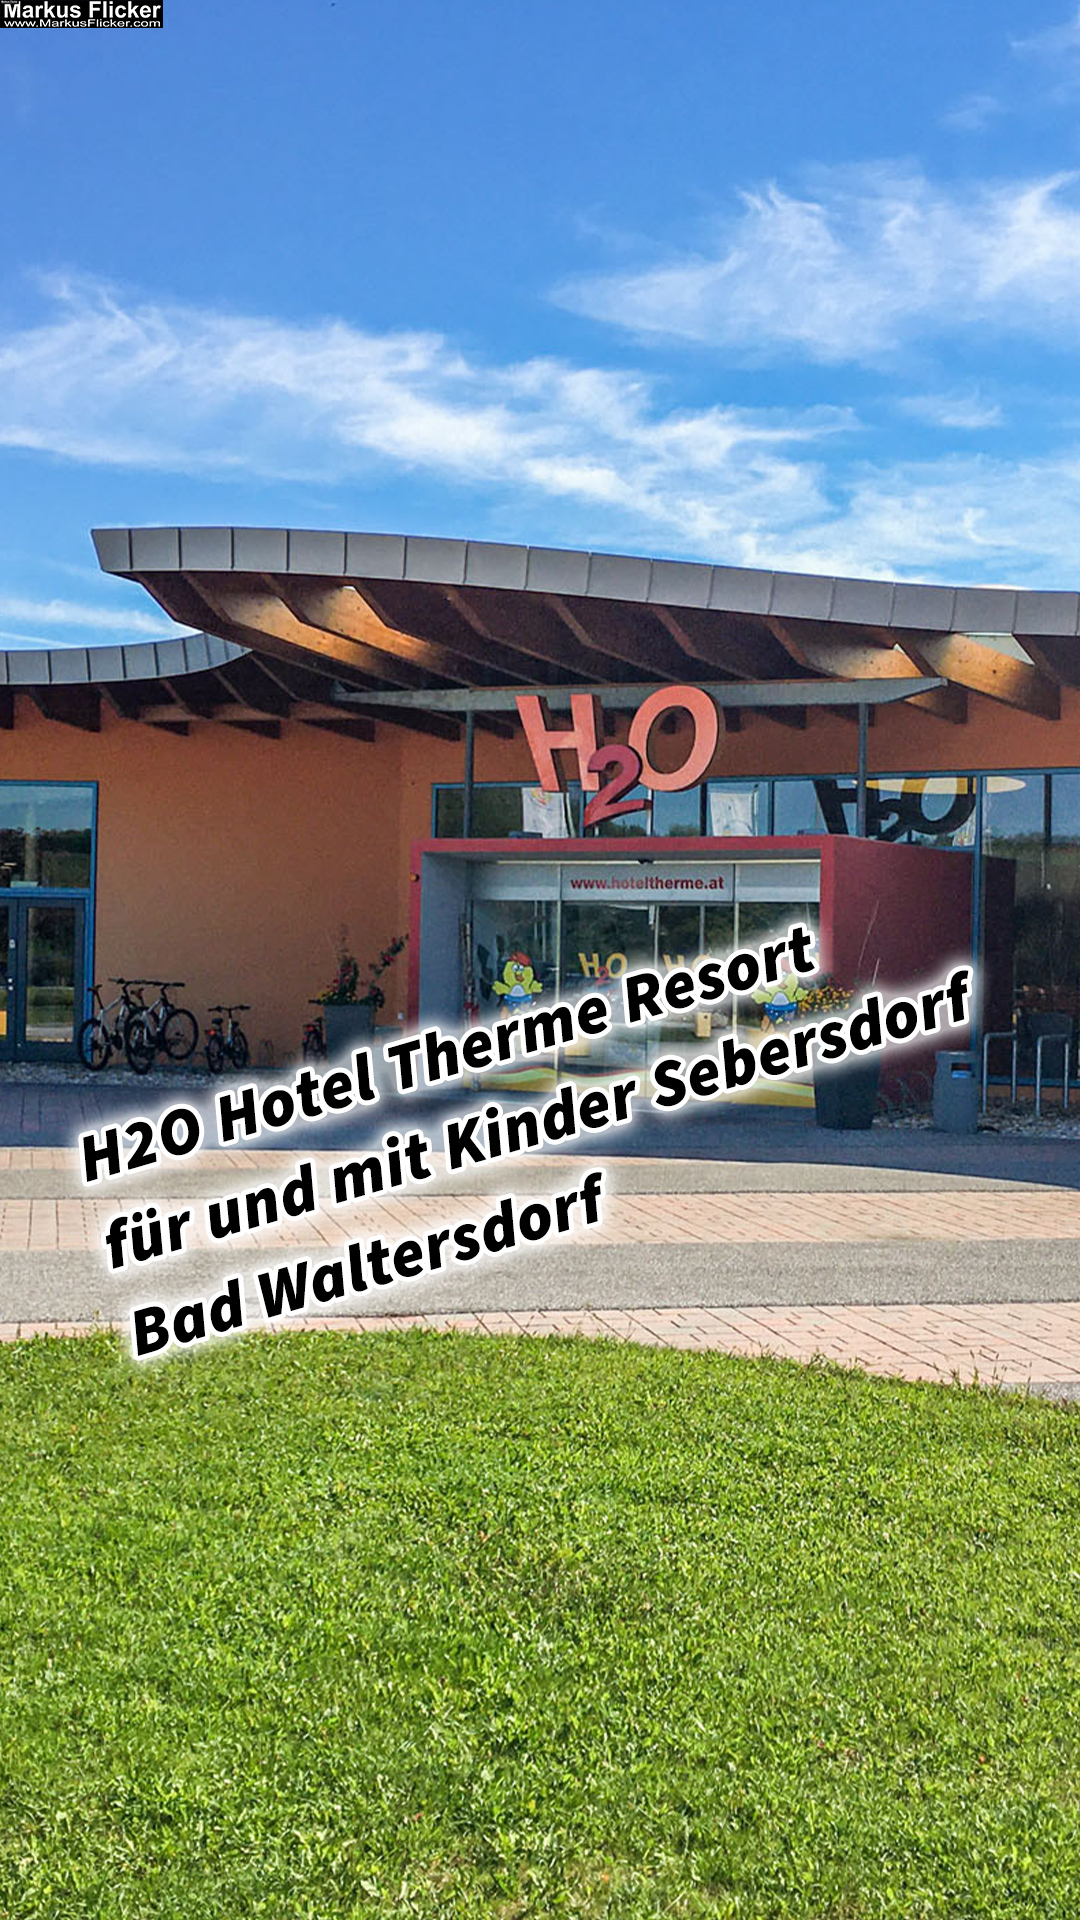 H2O Hotel Therme Resort für und mit Kinder Sebersdorf Bad Waltersdorf Steiermark Österreich